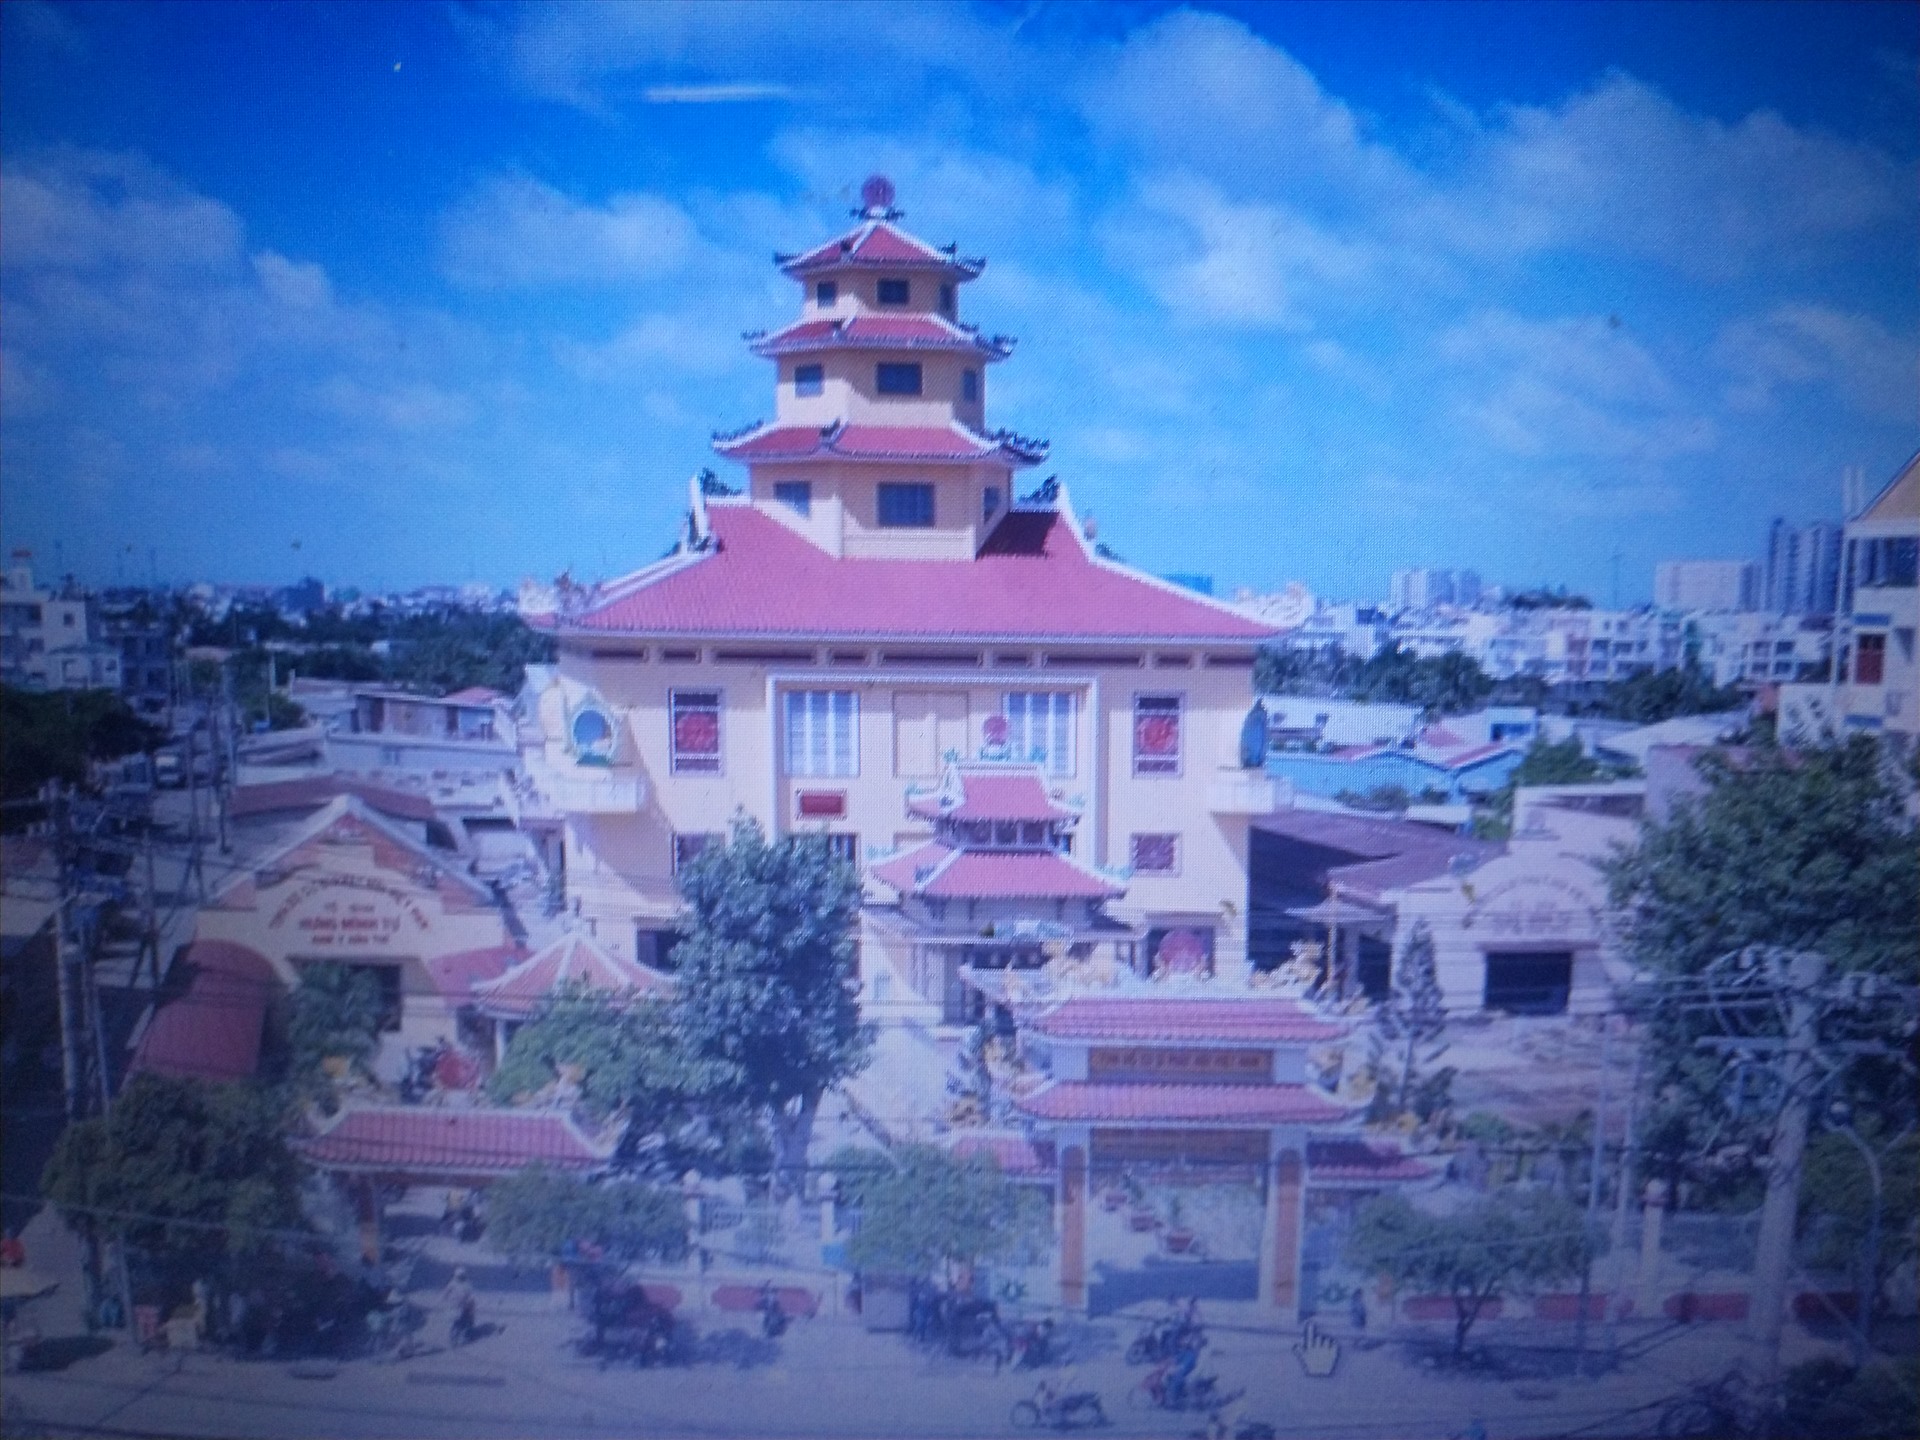 Chùa Hưng Minh Tự (Quận 6, TP.HCM), nơi ông Kỳ thực hiện phù điêu Rồng trên nóc chùa. Ảnh: T.L